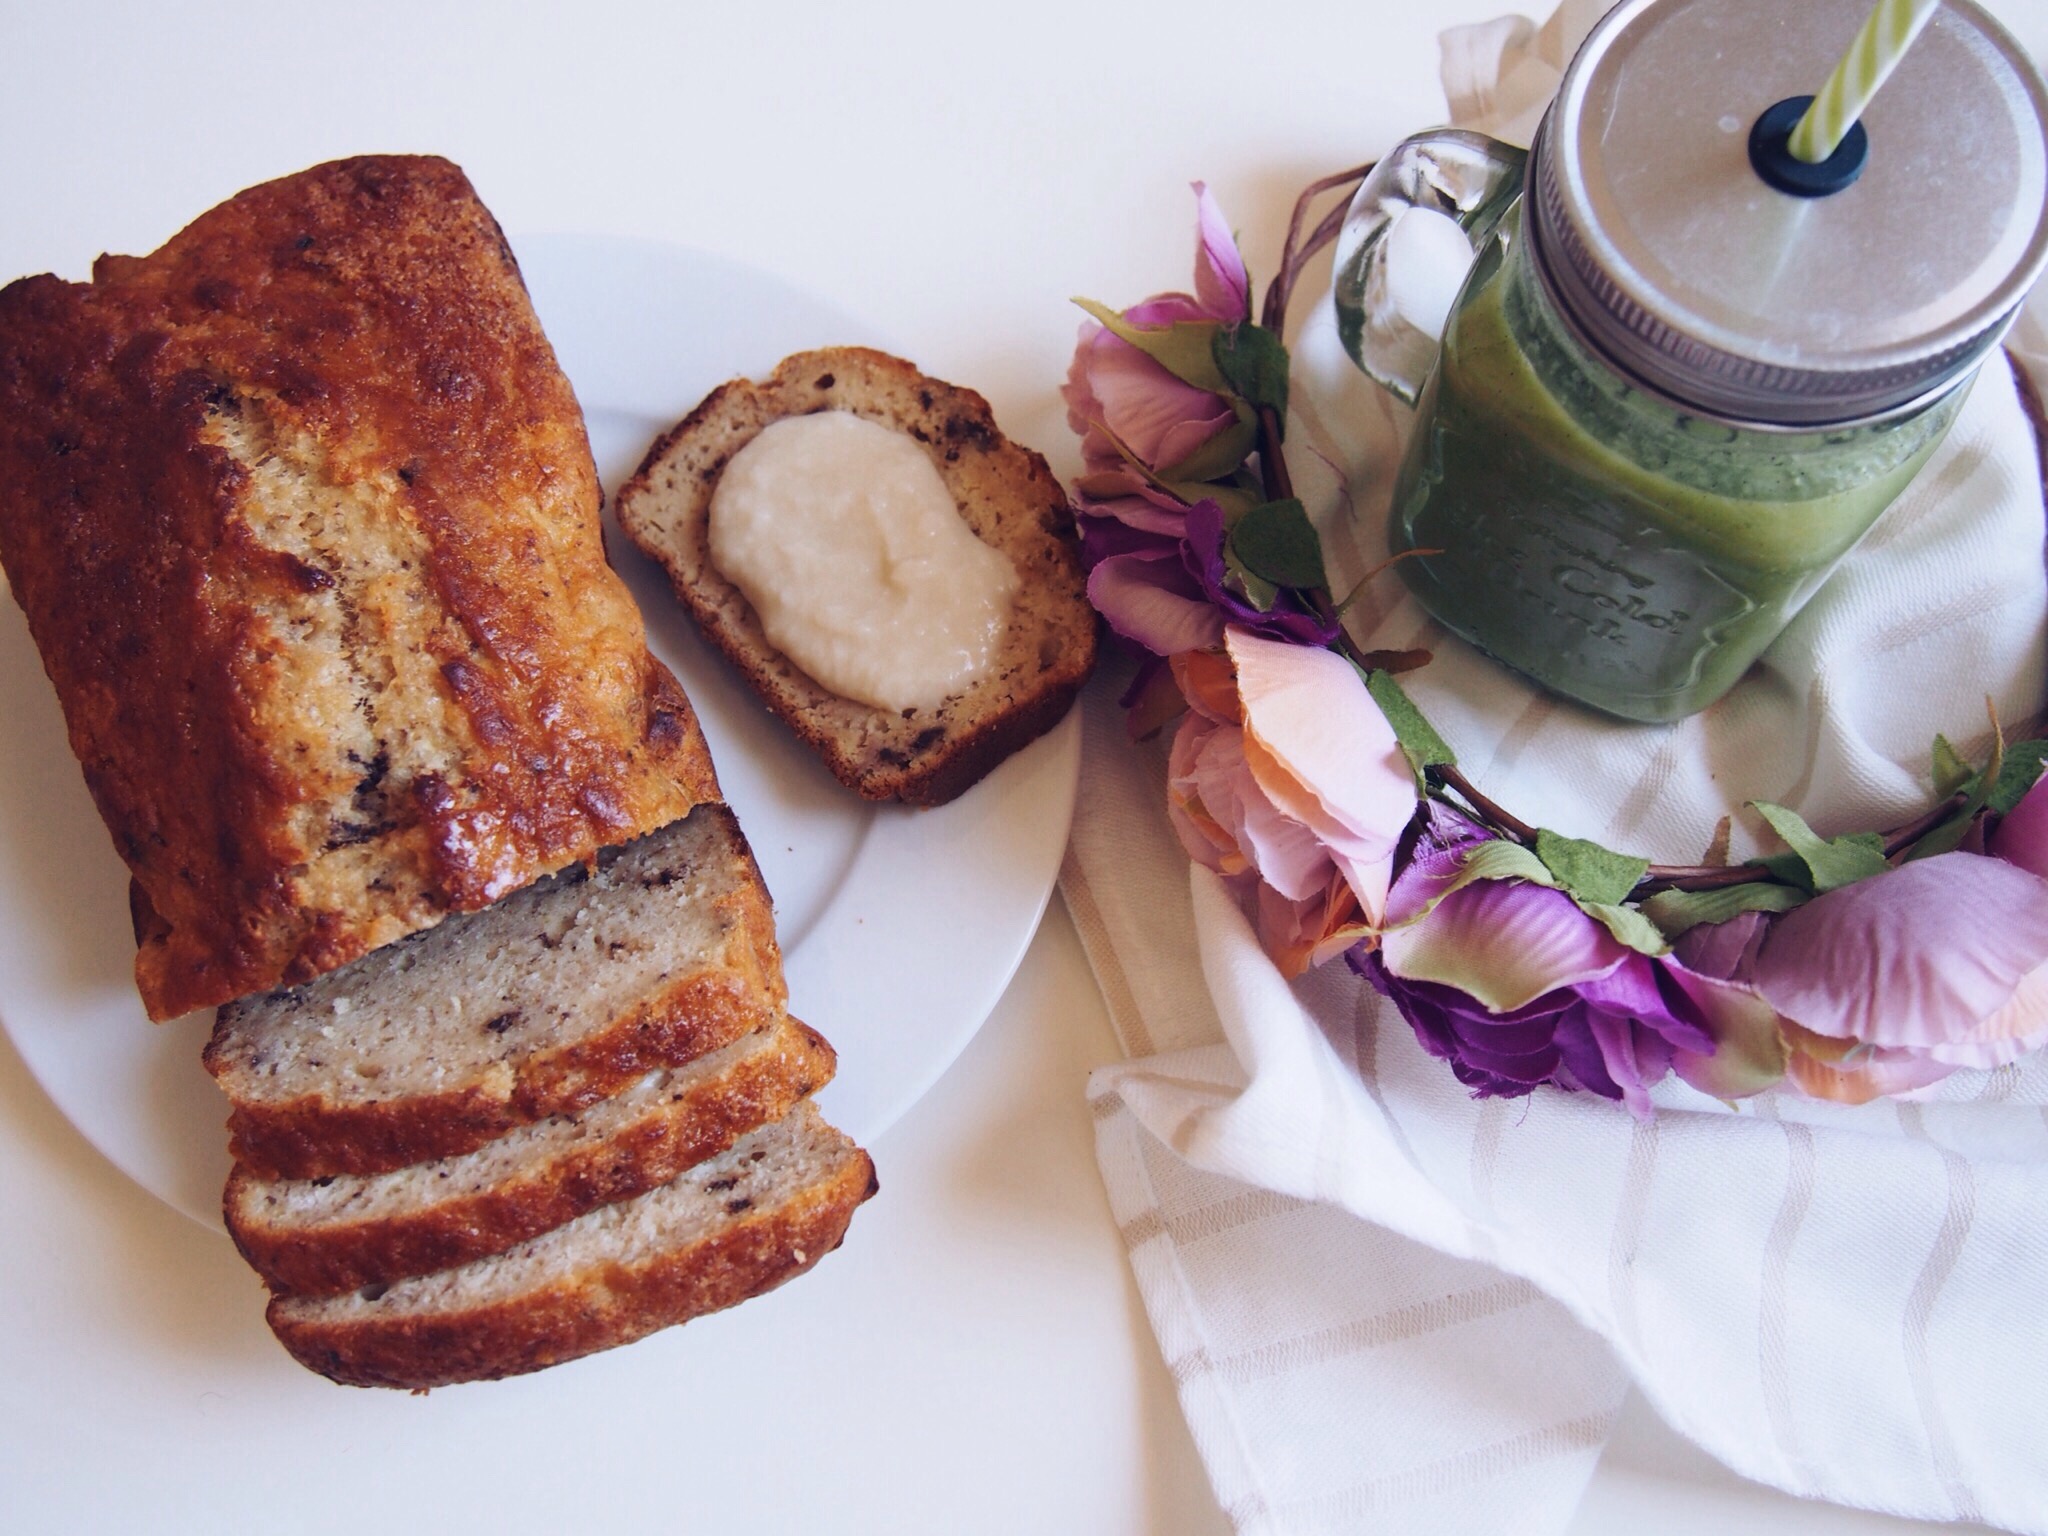 brunch_Green_healthy_muffins_banana bread_smoothie_glutenfree_sans gluten